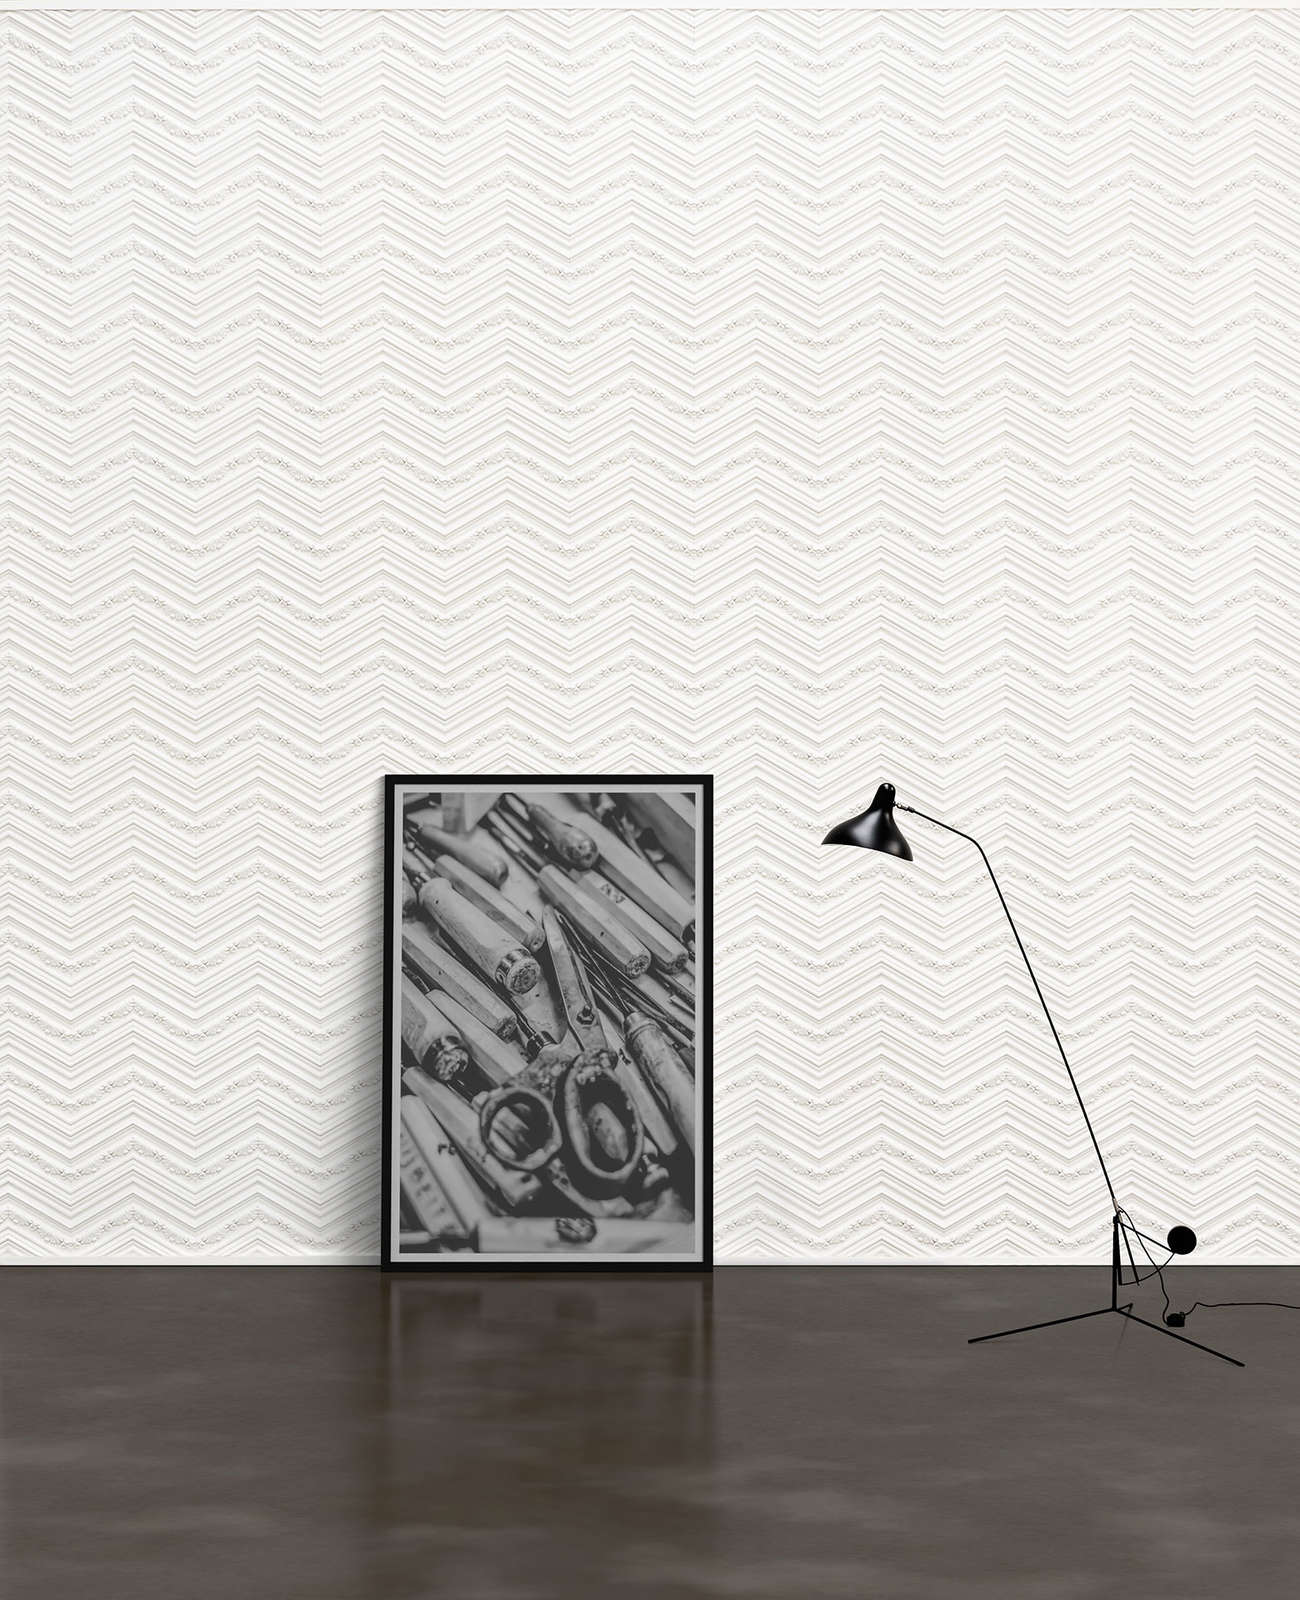             Dekorative 3D Wandpaneele Mtskheta – W130
        